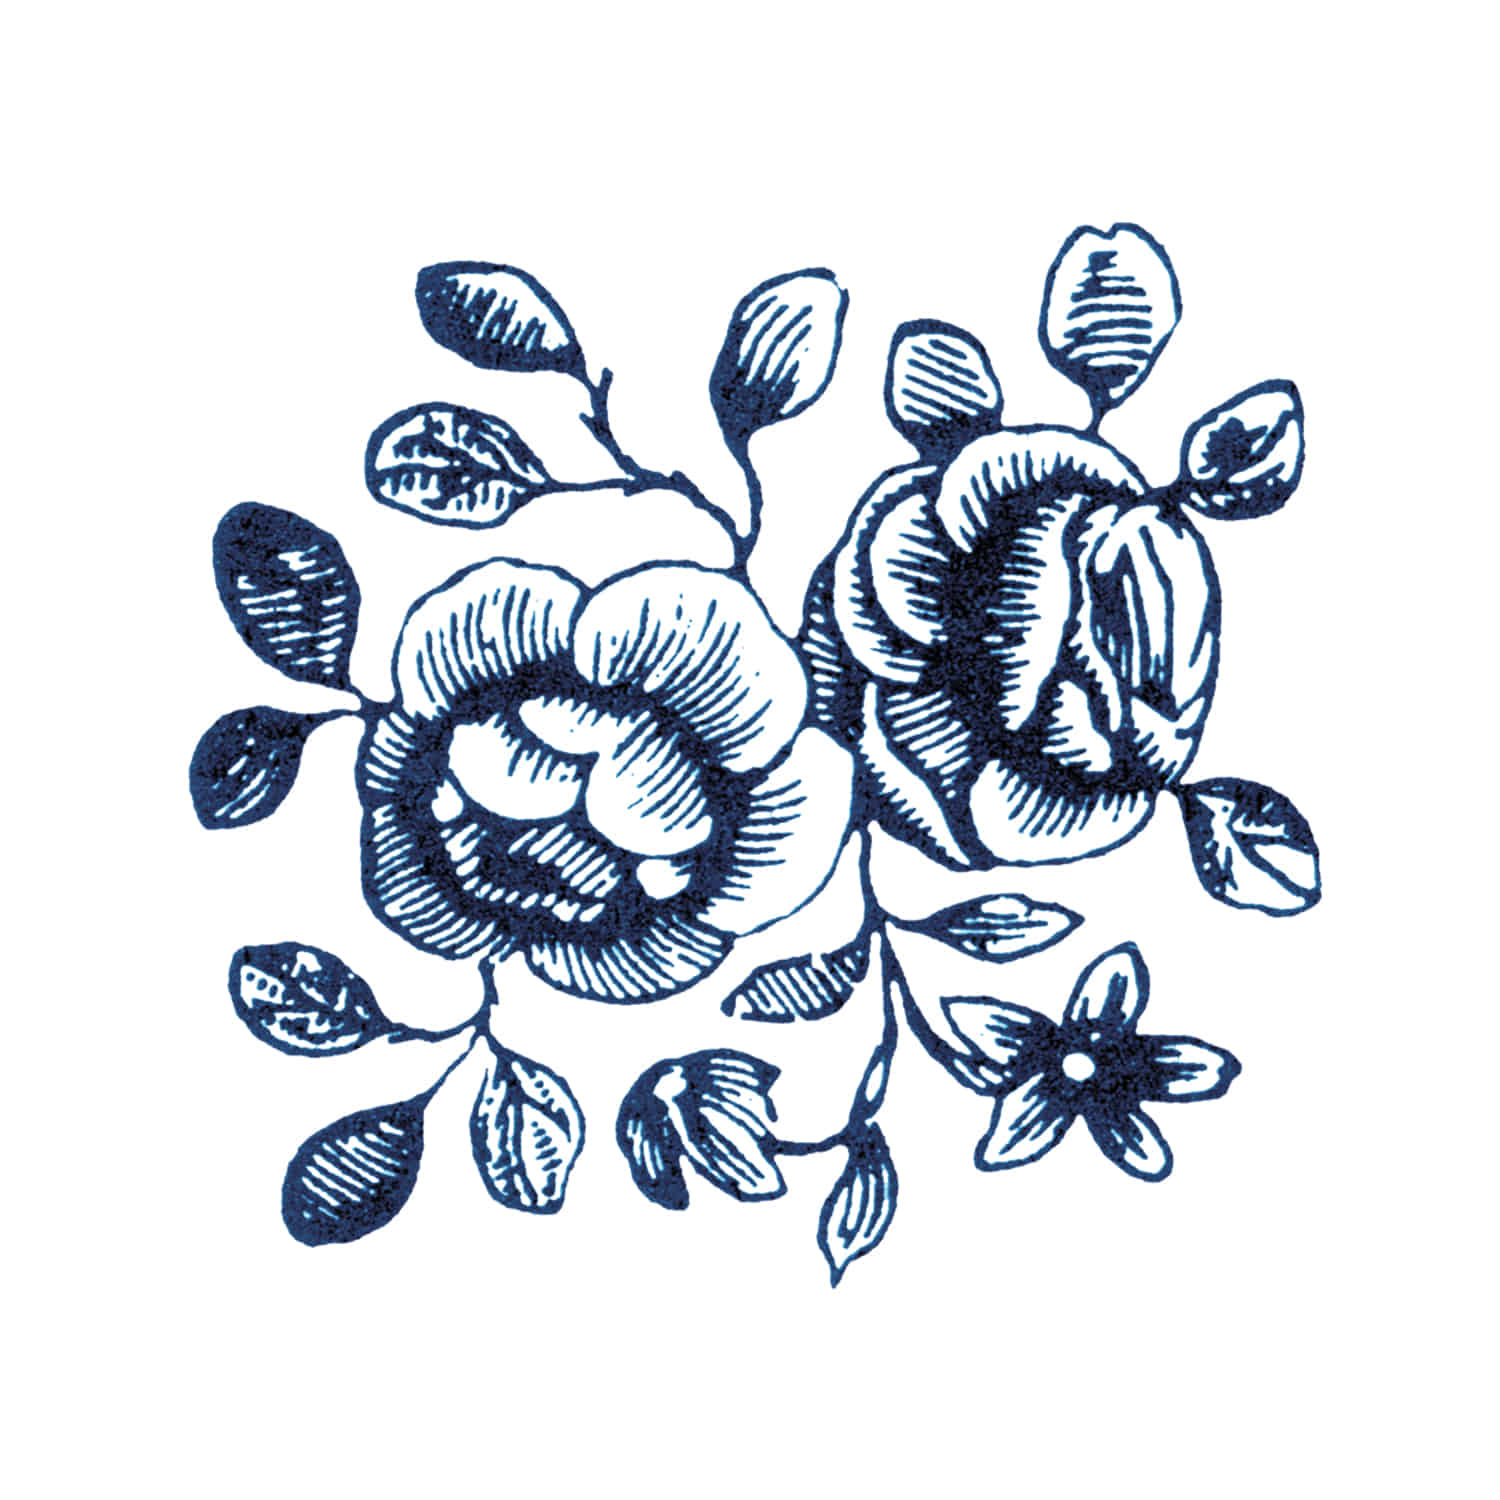 태틀리 Cartolina Blooms 타투스티커 페어 2매